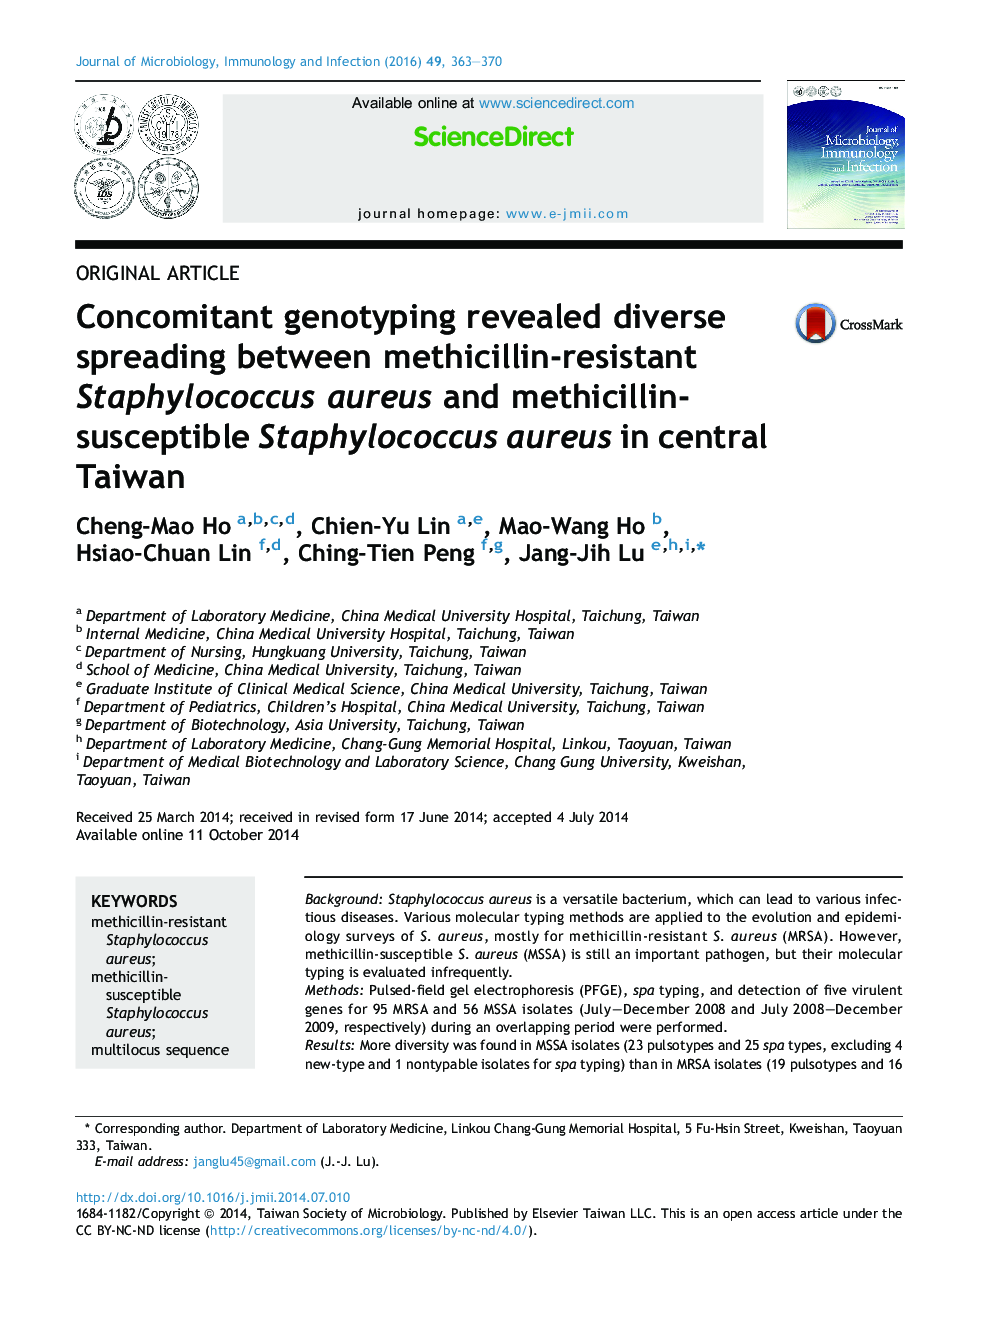 همزمان سازی ژنوتیپ ها نشان دهنده گسترش متنوعی از استافیلوکوکوس اورئوس مقاوم به متسییلین و استافیلوکوک اورئوس حساس به متسییلین در مرکز تایوان 